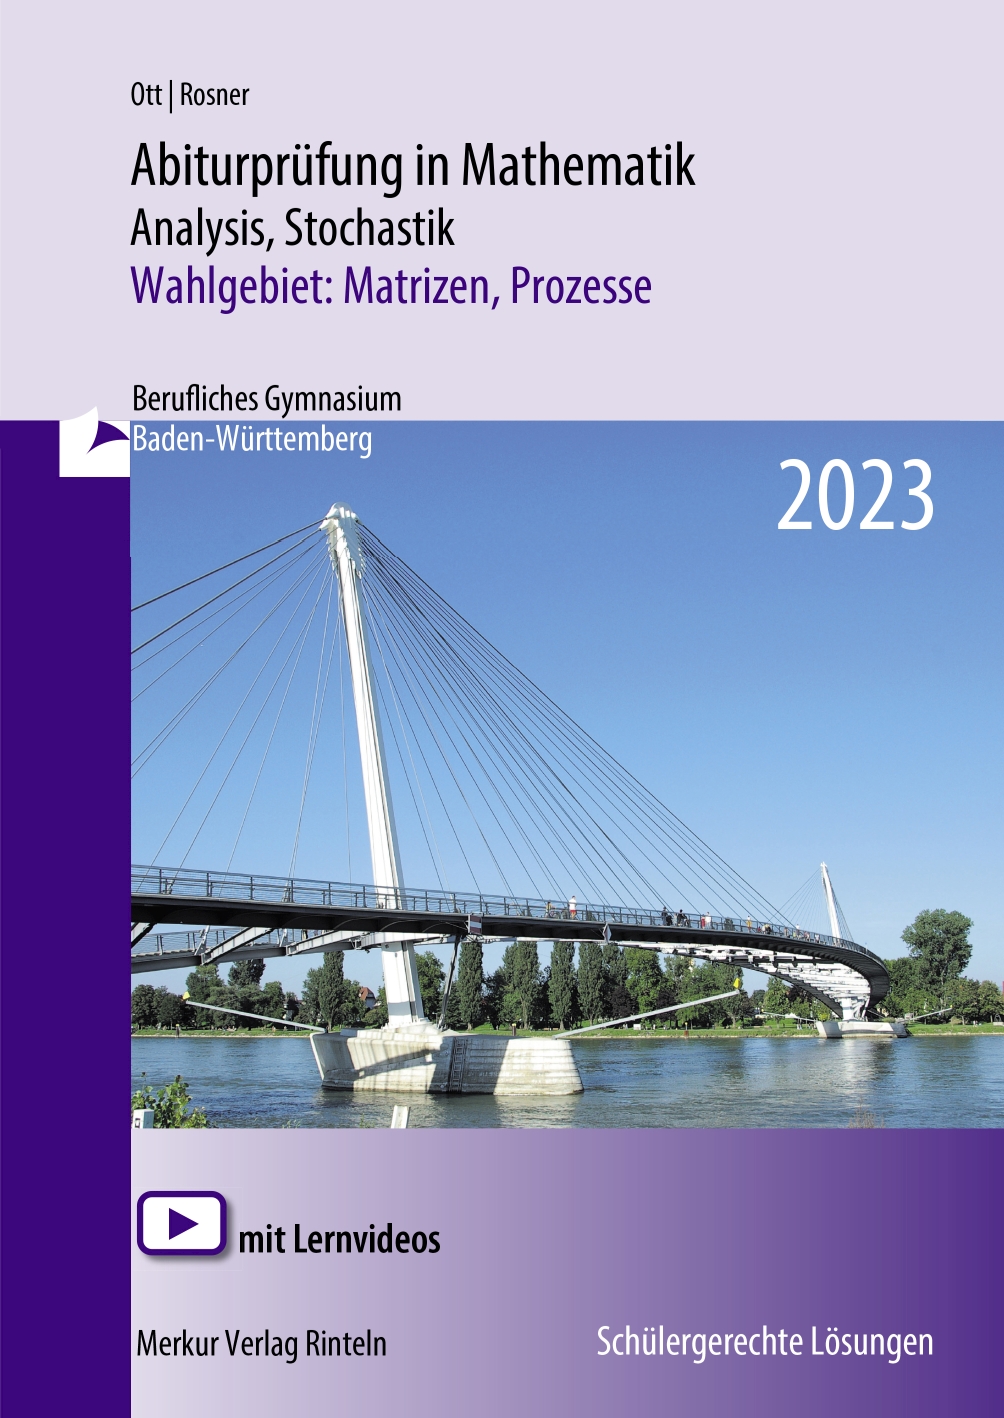 Abiturprüfung in Mathematik - 2023 Analysis, Stochastik Wahlgebiet: Matrizen, Prozesse